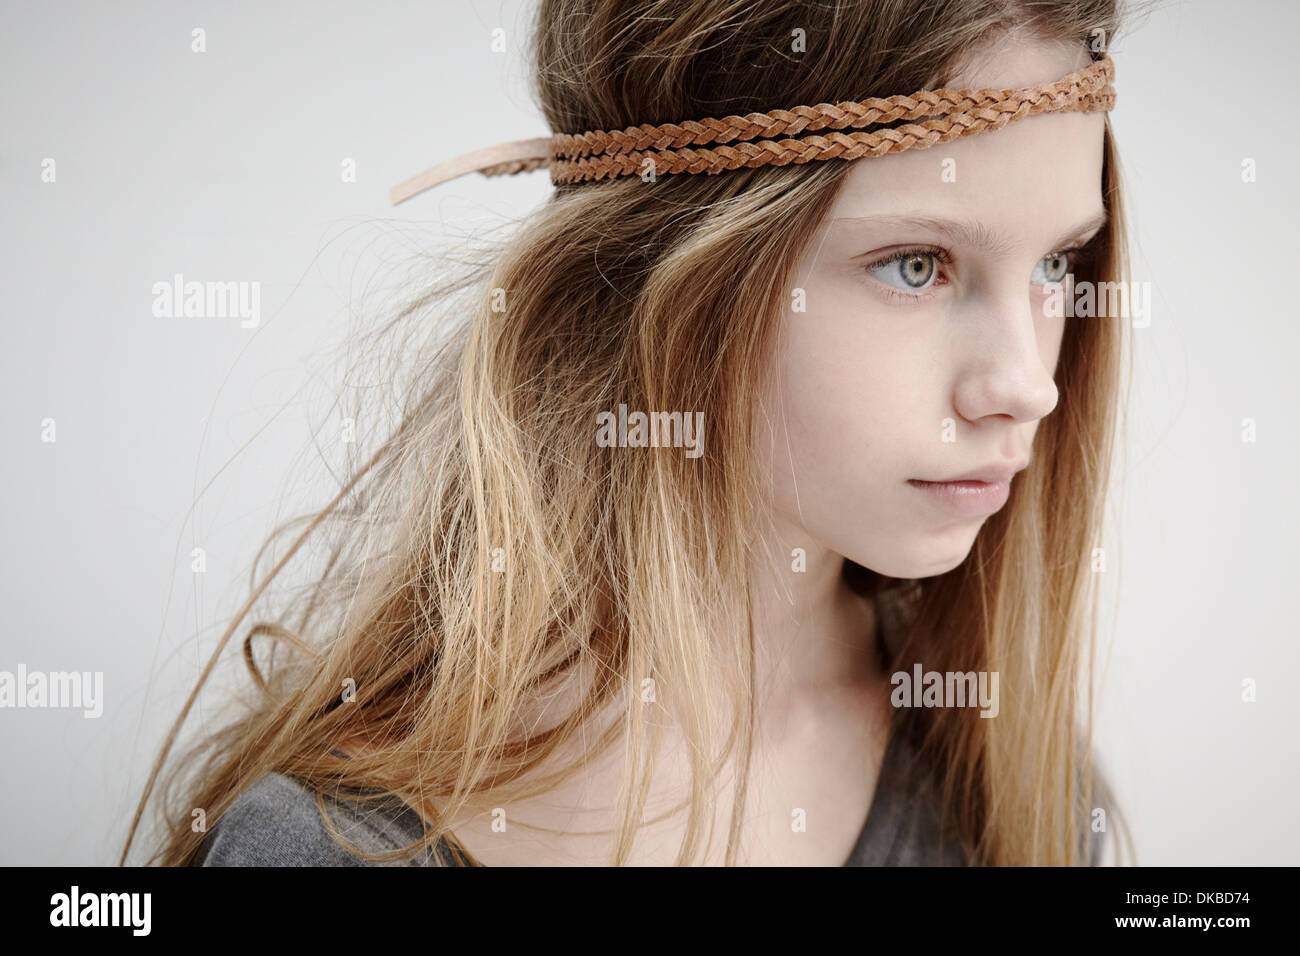 Ritratto di una ragazza che indossa la treccia in pelle attorno alla testa Foto Stock